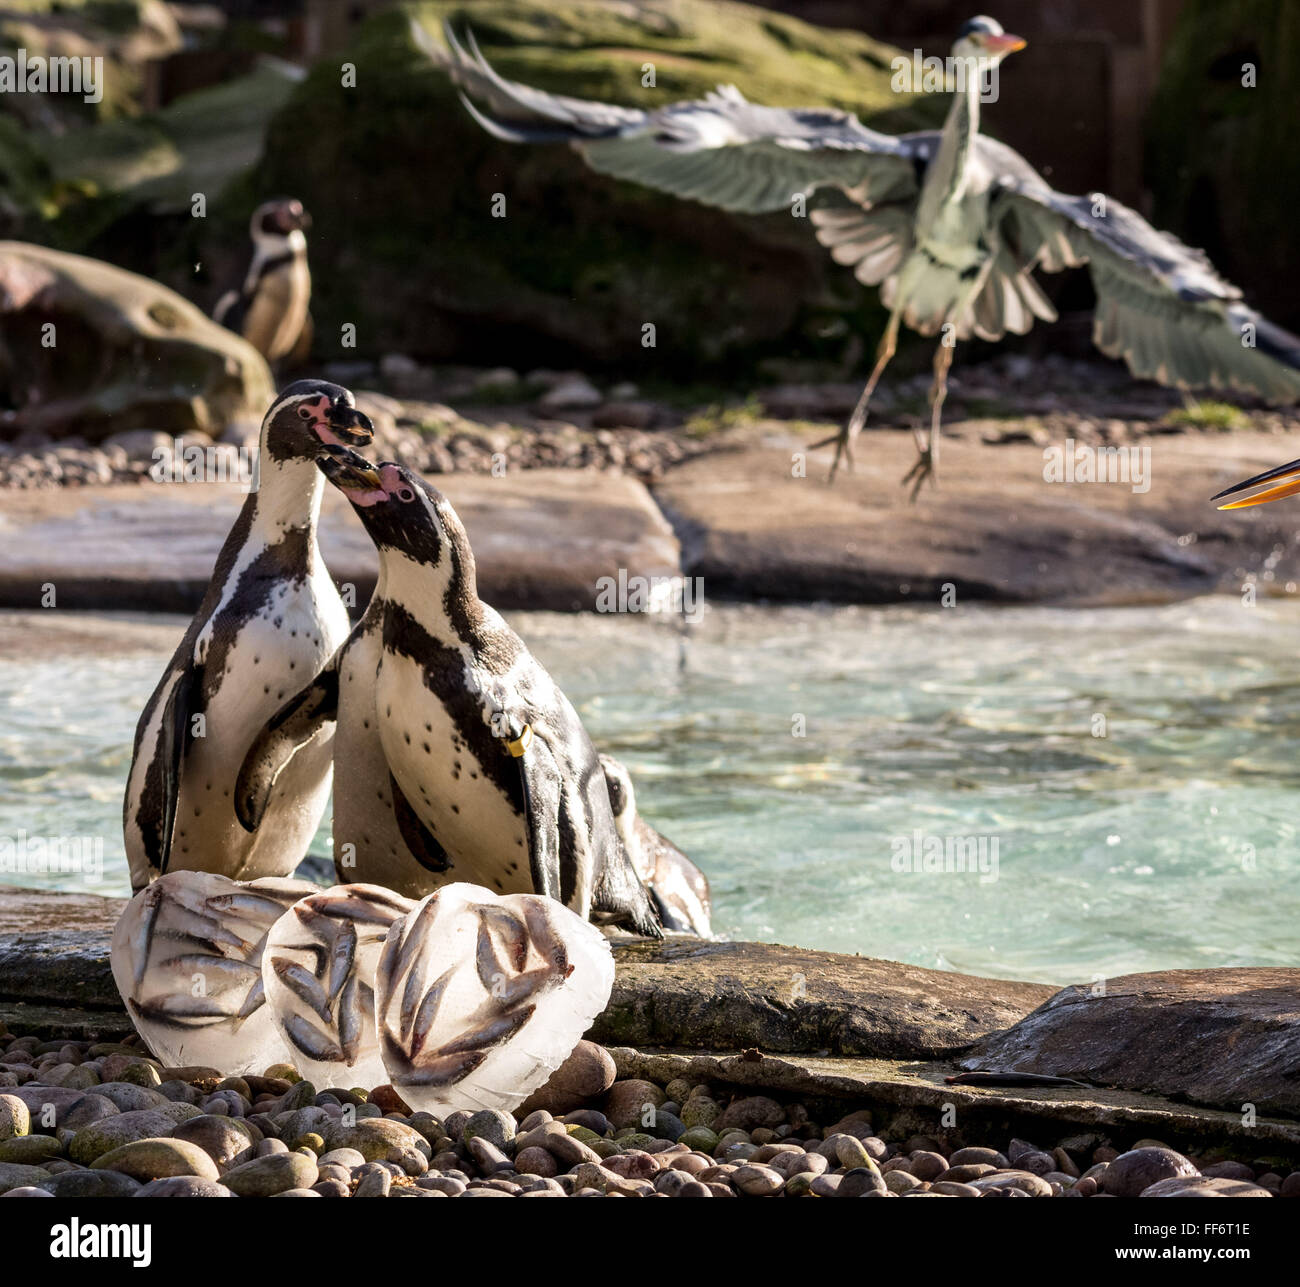 Londra, Regno Unito. Xi Febbraio, 2016. I pinguini Humboldt presso lo Zoo di Londra sono offerti un San Valentino a tema per trattare dei loro pesci preferiti, servito nel cuore a forma di blocchi di ghiaccio per evidenziare l'avvio della riproduzione dei pinguini come cominciano a raccogliere i loro nido-compagni Credito: Guy Corbishley/Alamy Live News Foto Stock